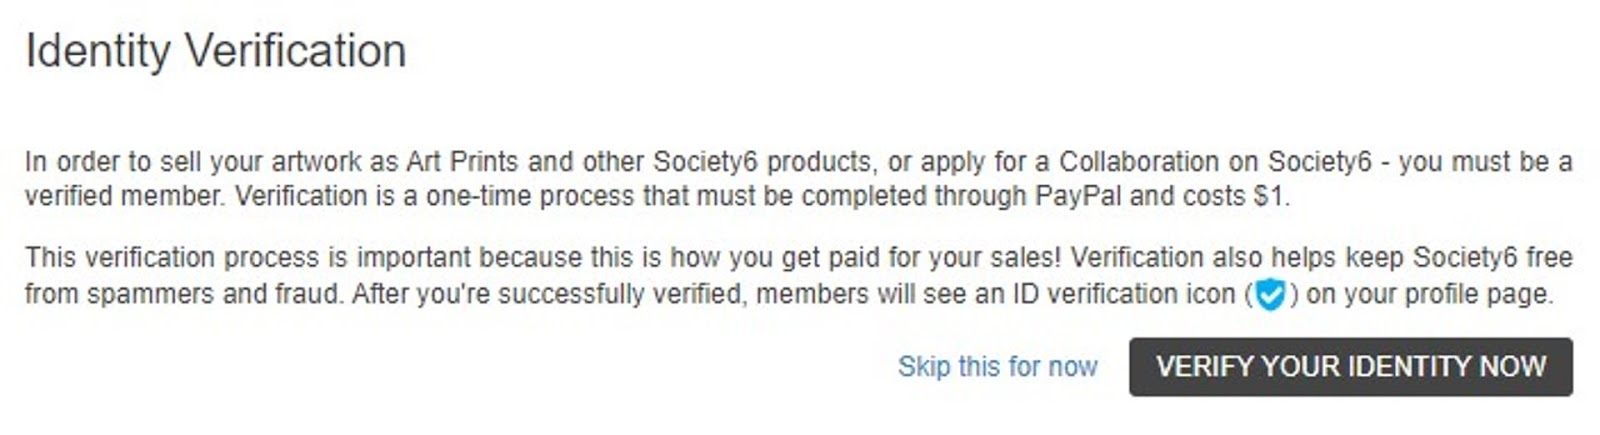 society6 identity verification cost